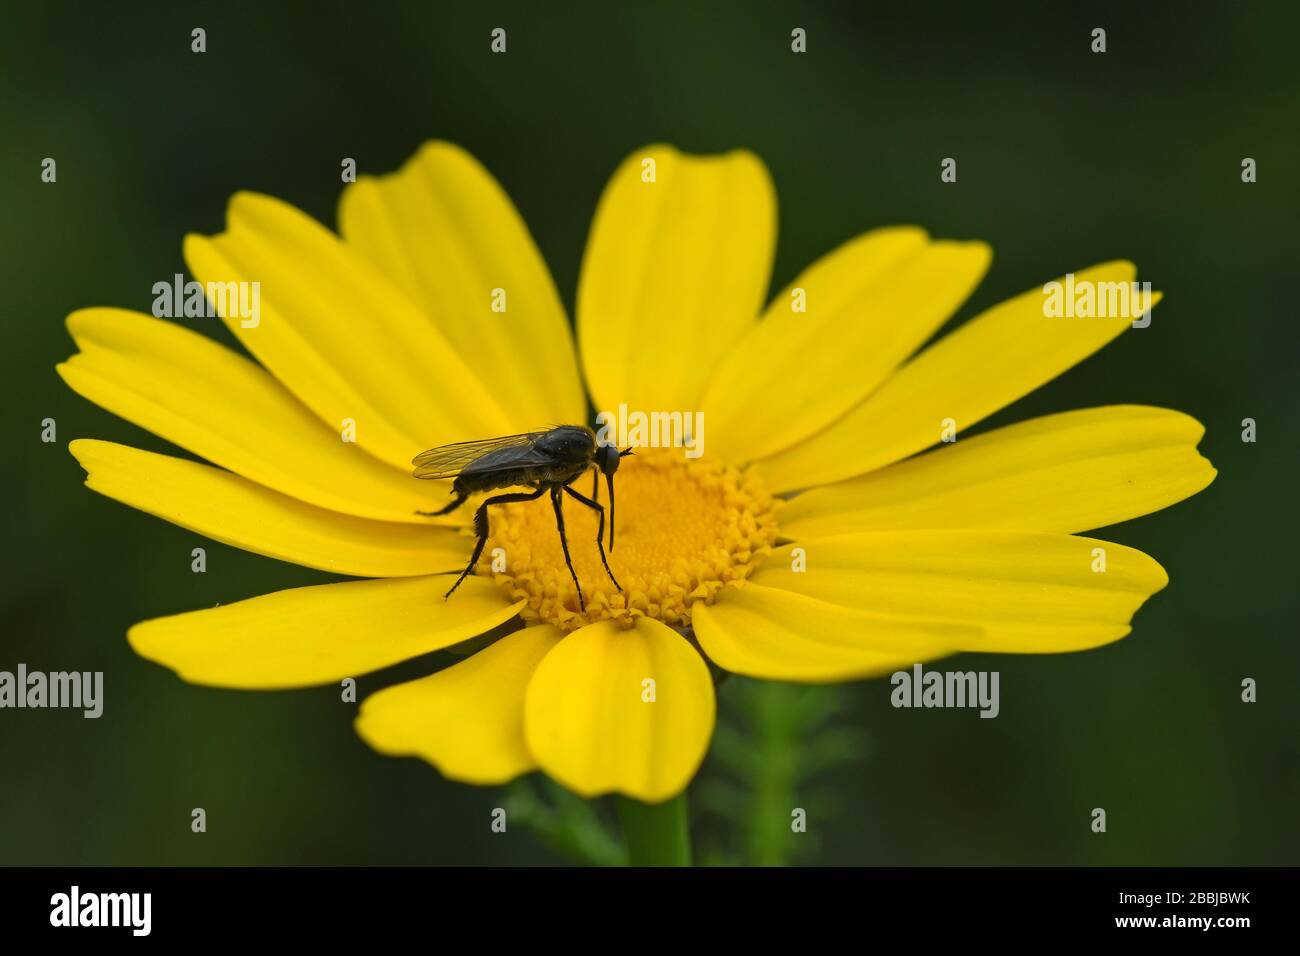 Black fly feed on nectar Stock Photo